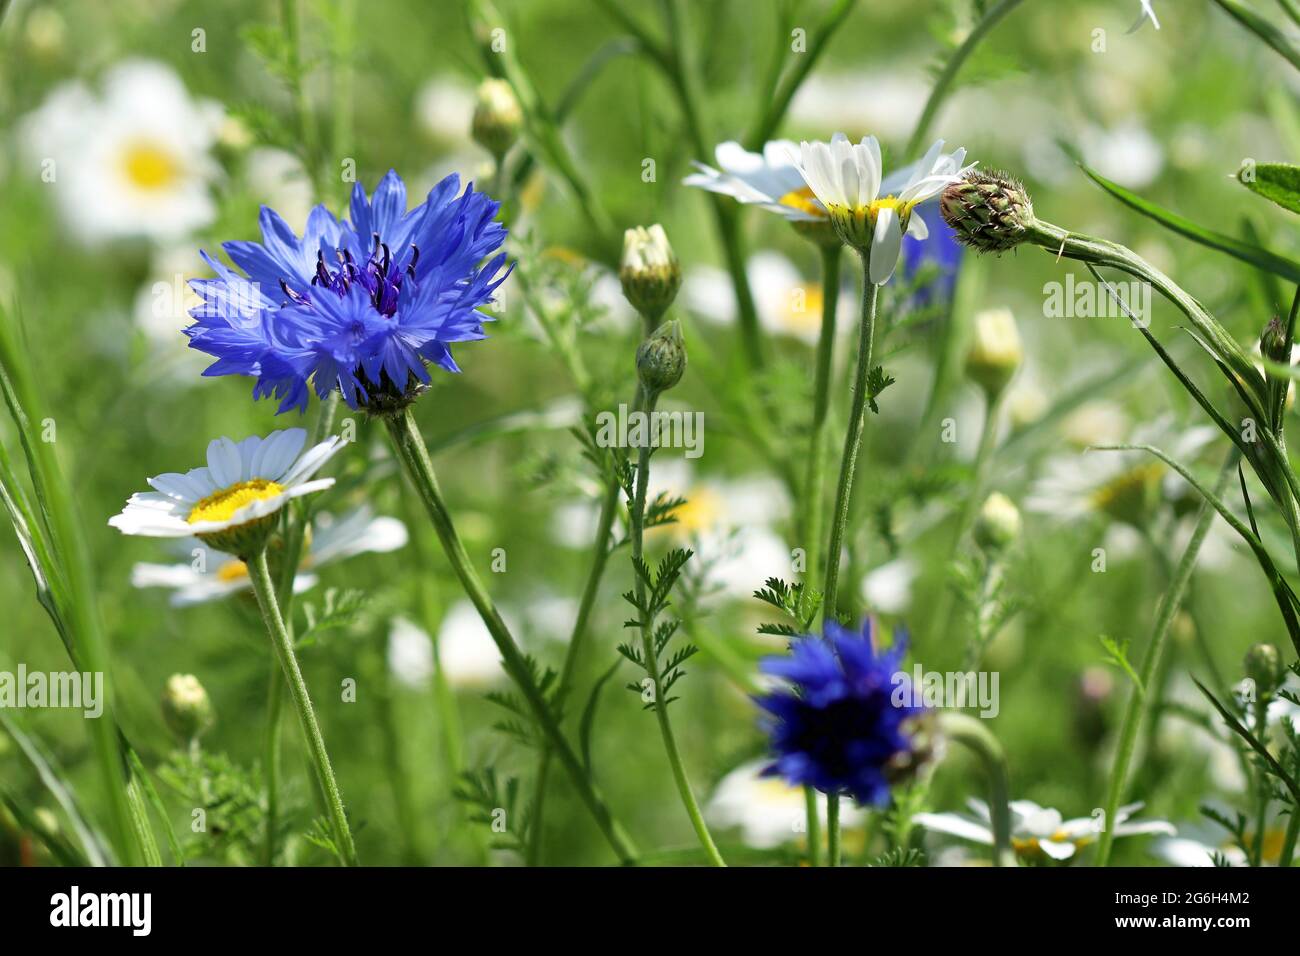 Le Cornflower bleu Centaurea Cyanus, autrefois considéré comme une mauvaise herbe des champs de céréales, maintenant une fleur sauvage très aimée. Les pâquerettes d'Oxeye sont visibles en arrière-plan Banque D'Images